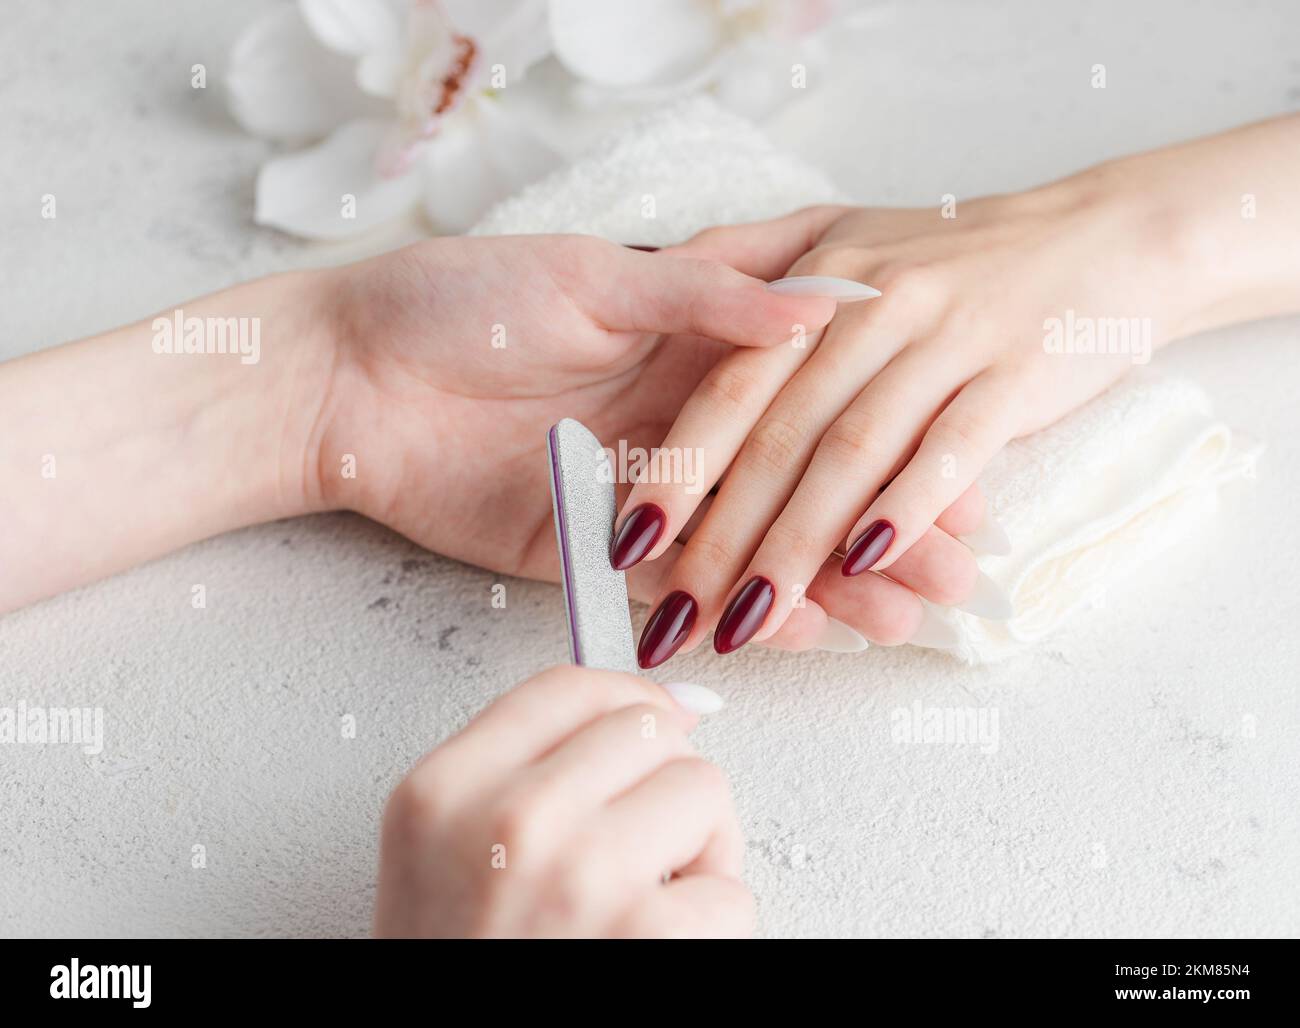 Belle mani di una giovane donna con manicure rosso scuro sulle unghie. Processo di manicure. Foto Stock